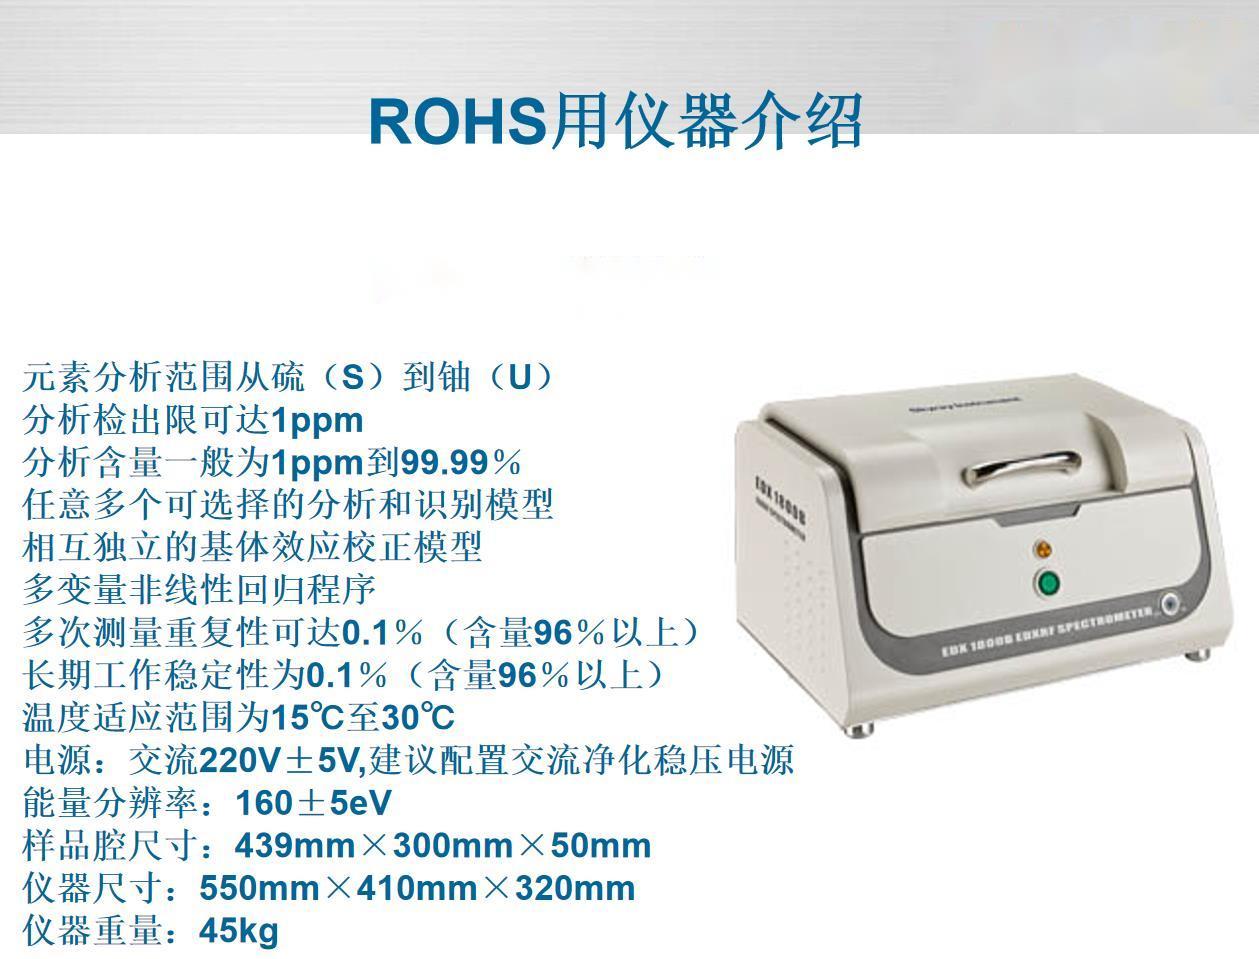 潮州硅胶ROHS标准光谱分析仪